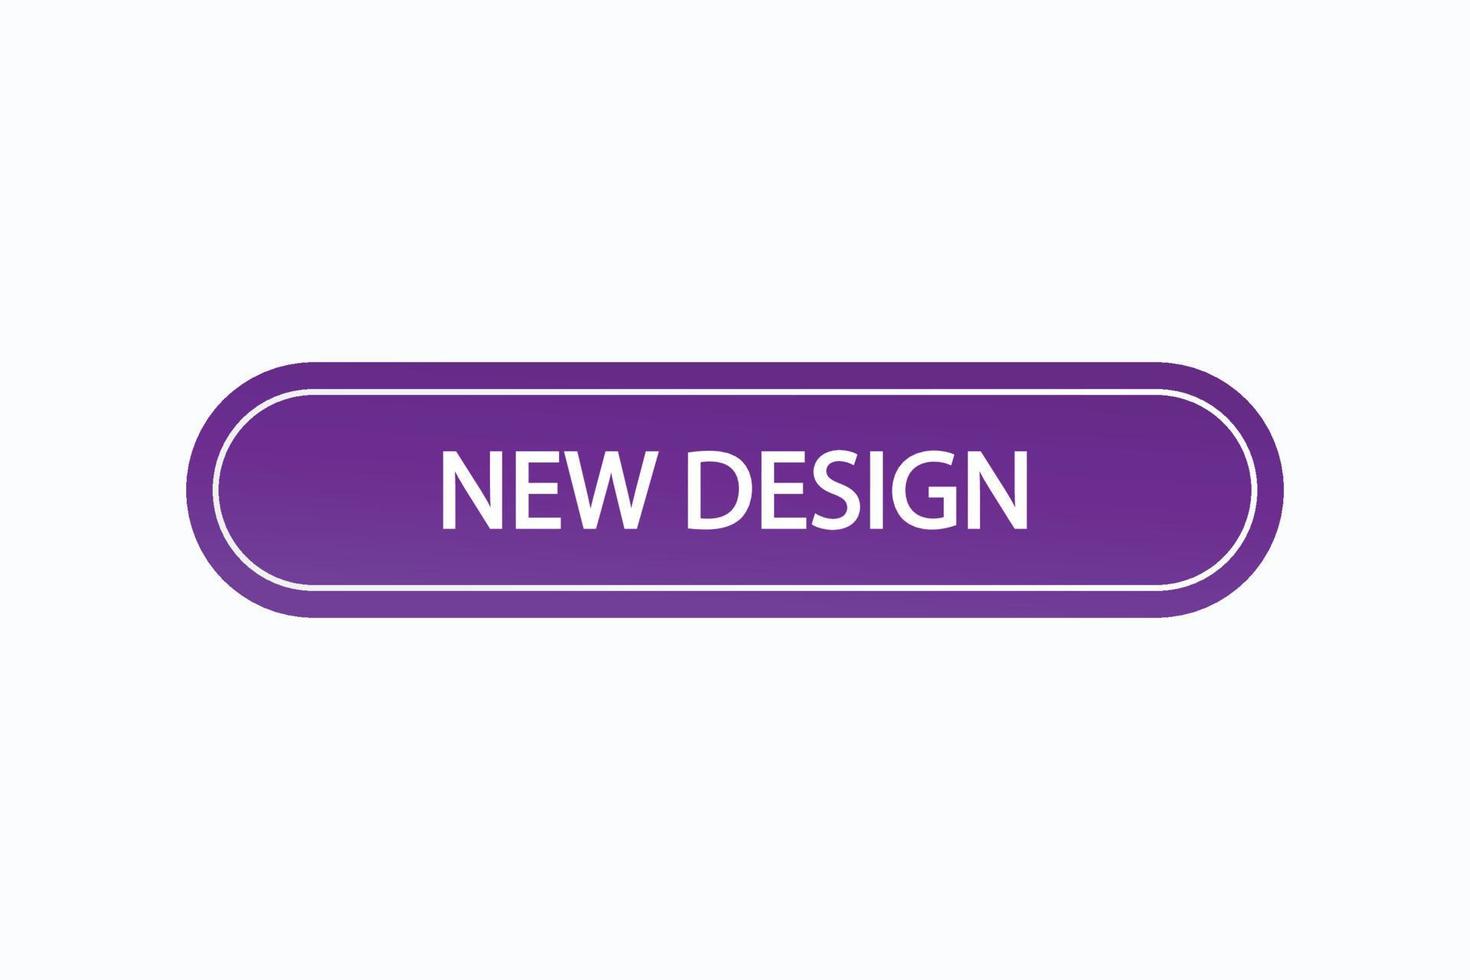 neues Design Schaltfläche vectors.sign Label Sprechblase neues Design vektor